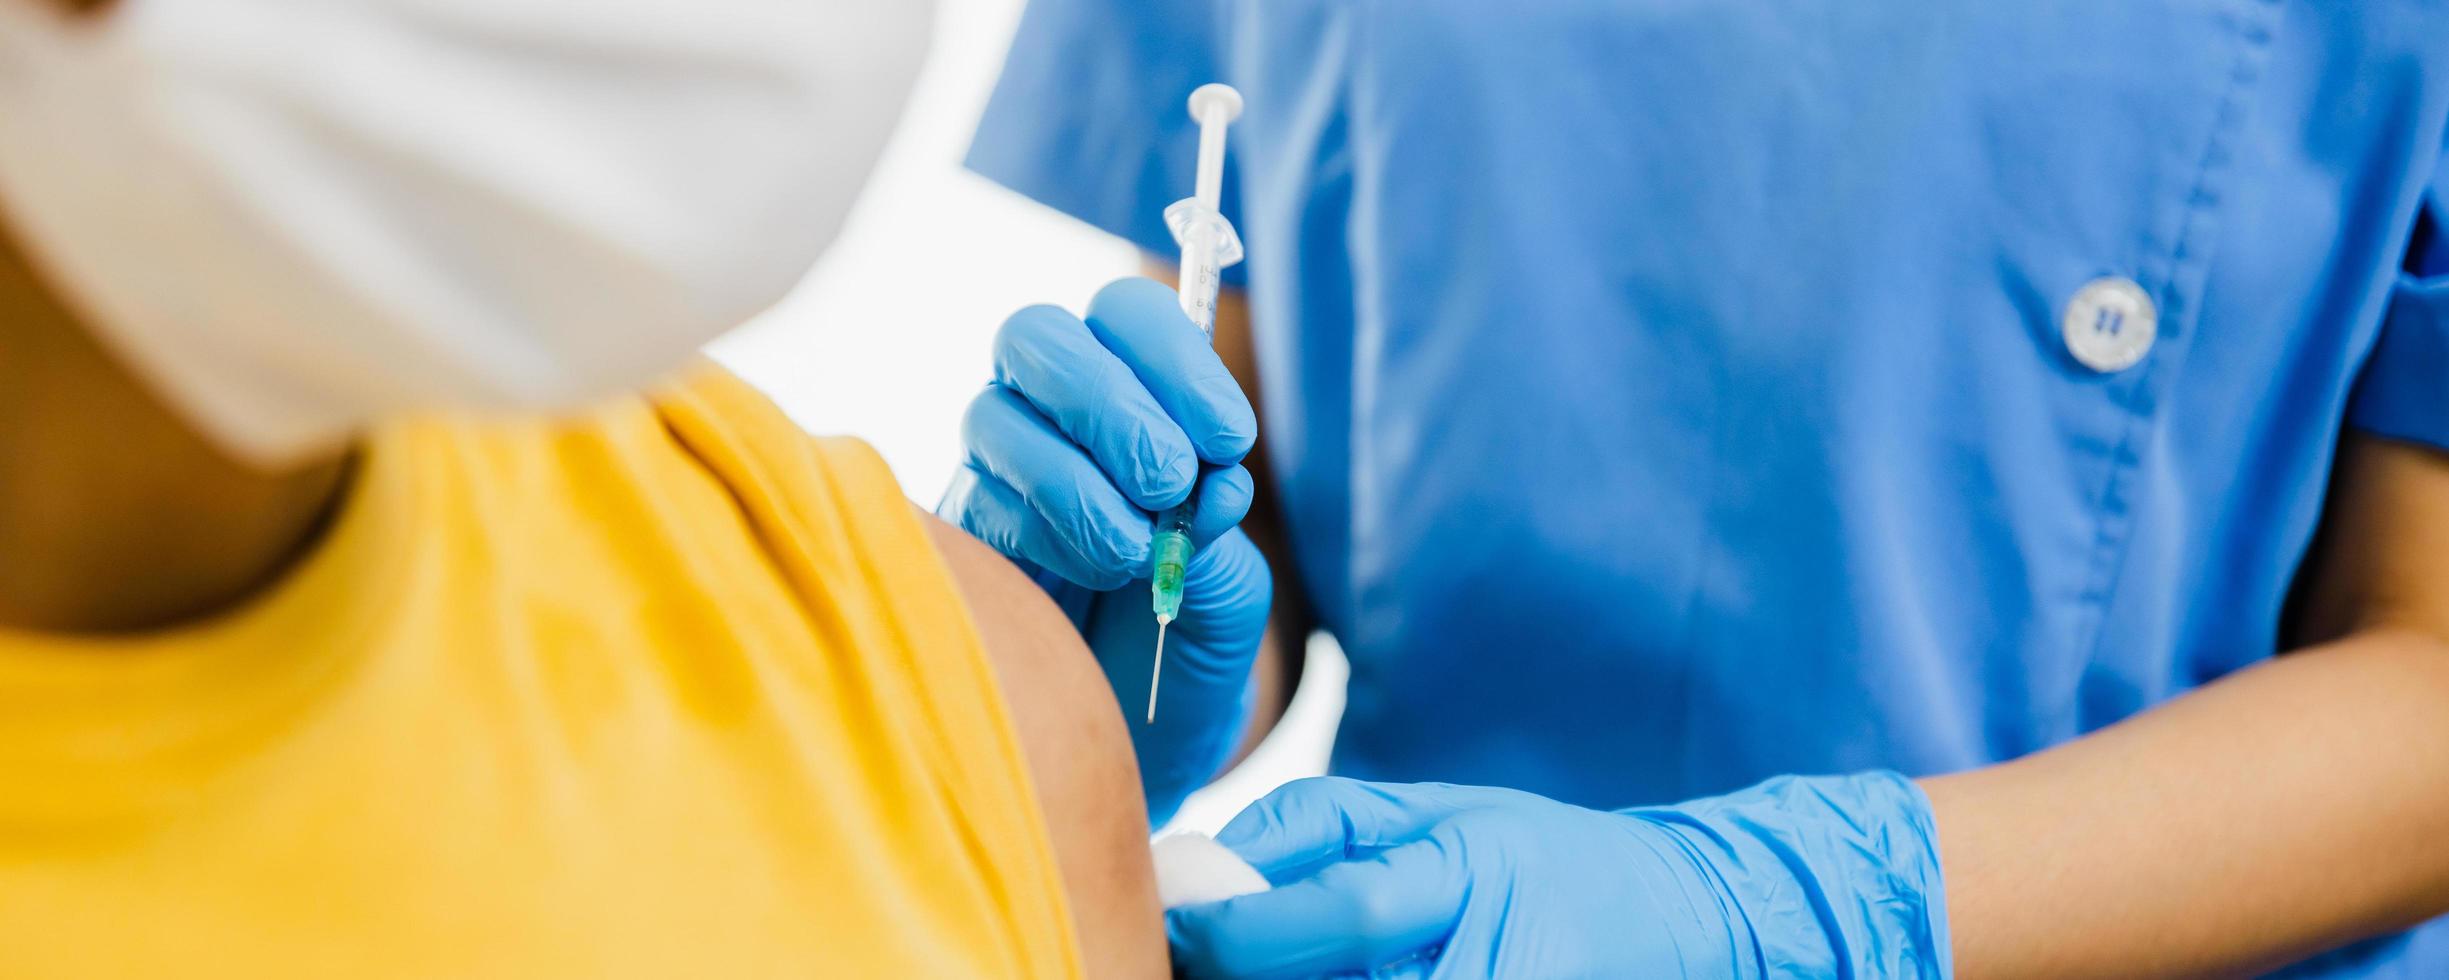 närbild på kvinnlig läkare som håller sprutan och använder bomull innan du injicerar patienten i medicinsk mask. covid-19 eller koronavirusvaccin foto